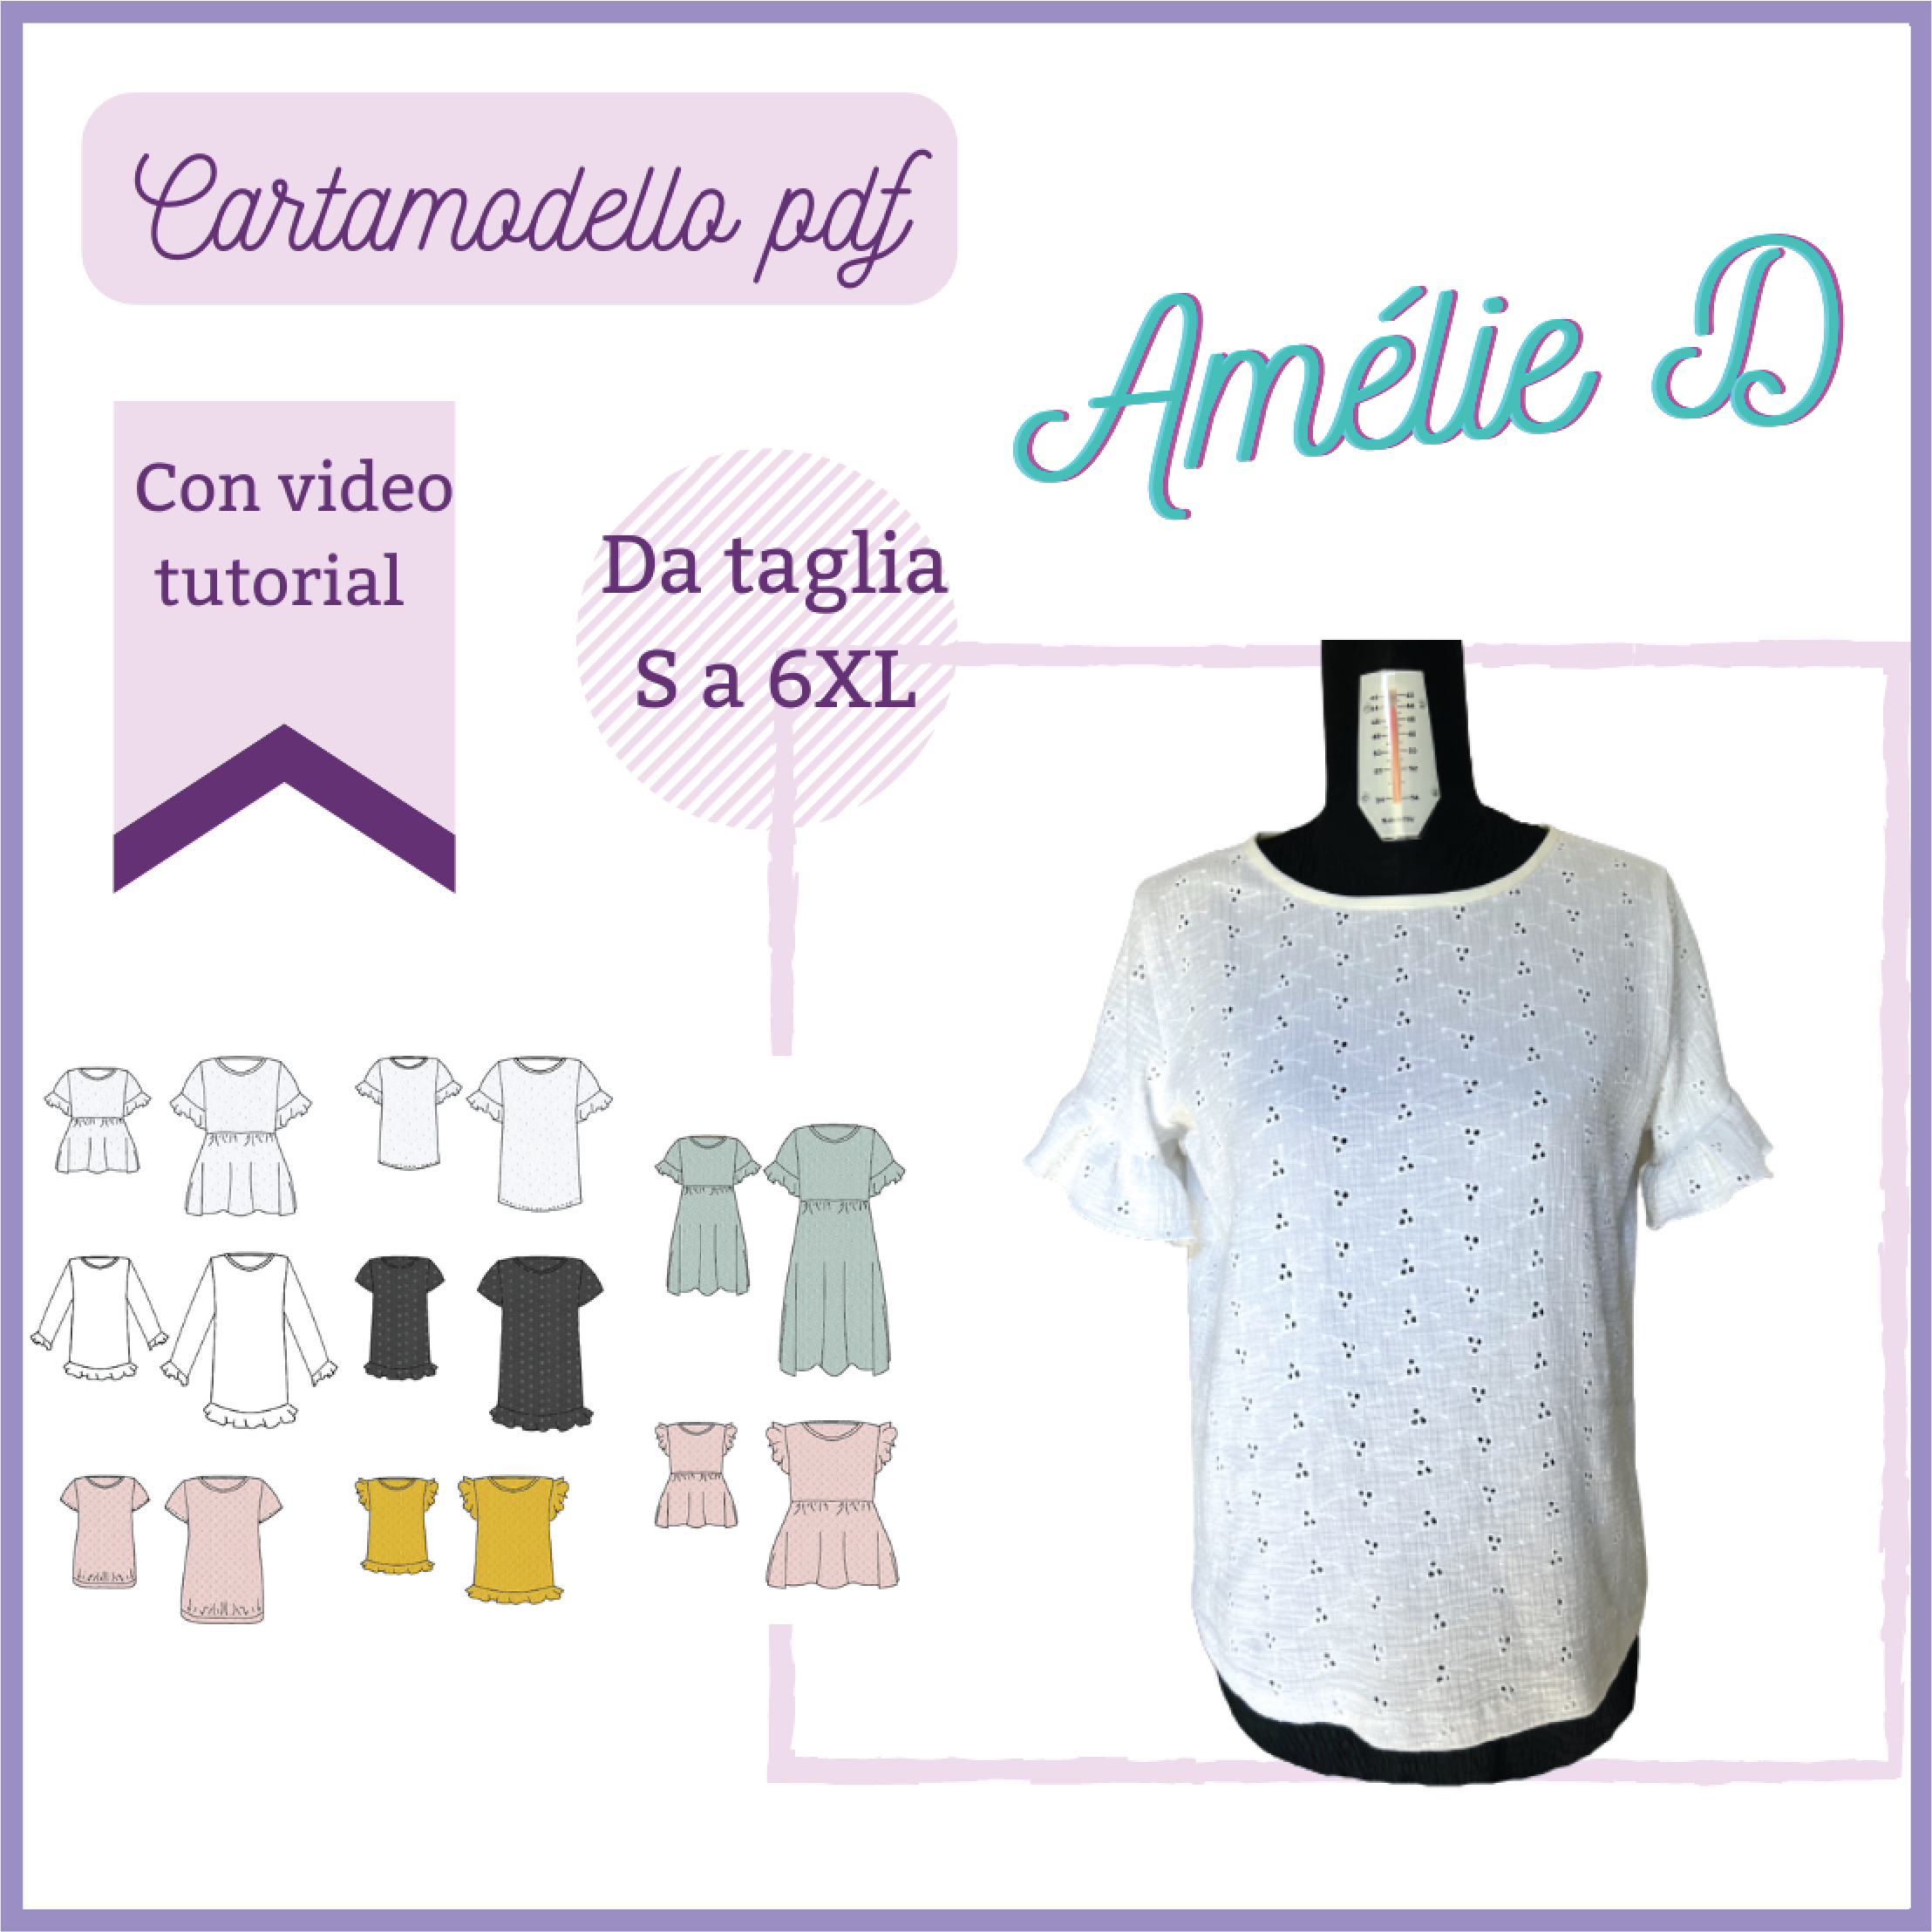 Blusa-vestito CARTAMODELLO donna multi versione Amélie, tg S a 6Xl